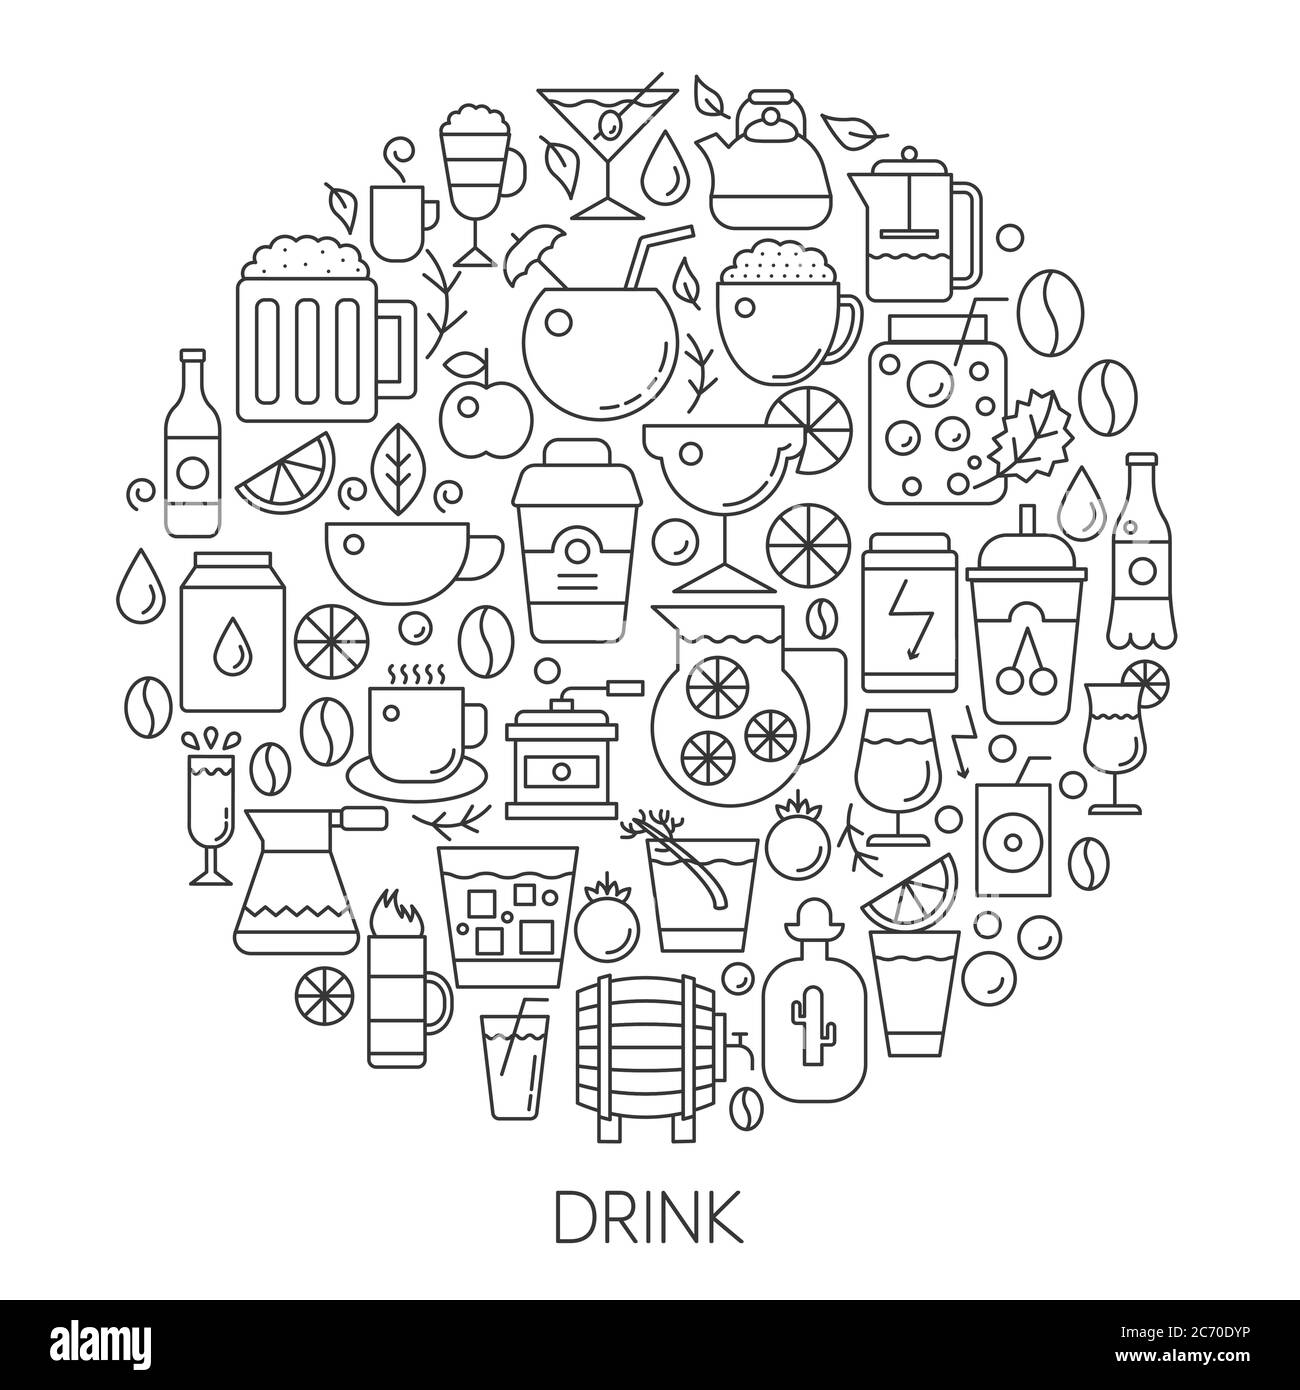 Icone dell'infografica sulle bevande in cerchio - illustrazione vettoriale della linea concettuale per copertina, emblema, badge. Insieme di icone di contorno Illustrazione Vettoriale